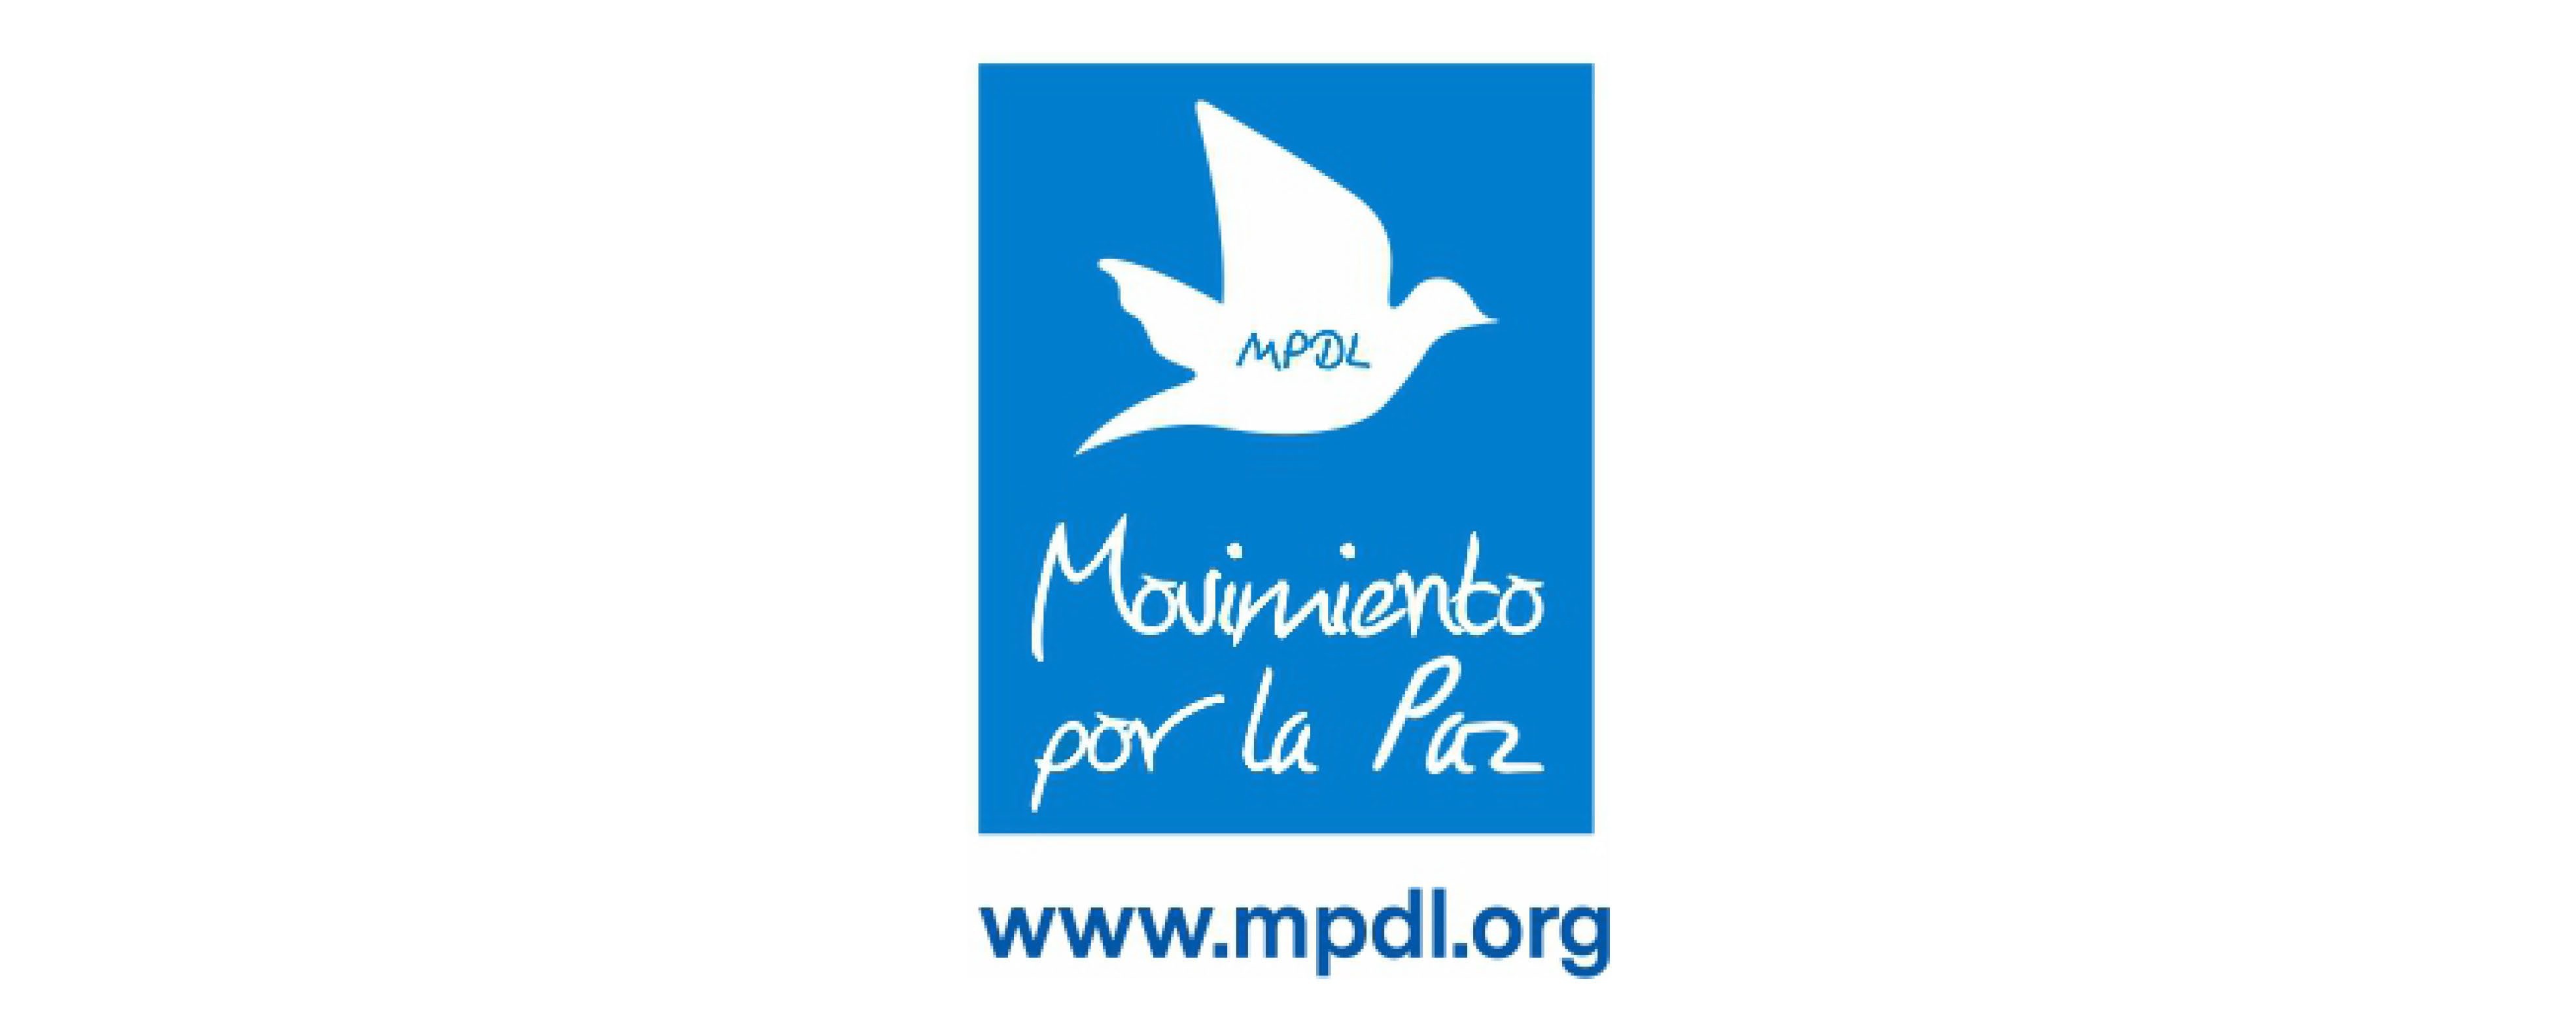 Movimiento por la paz